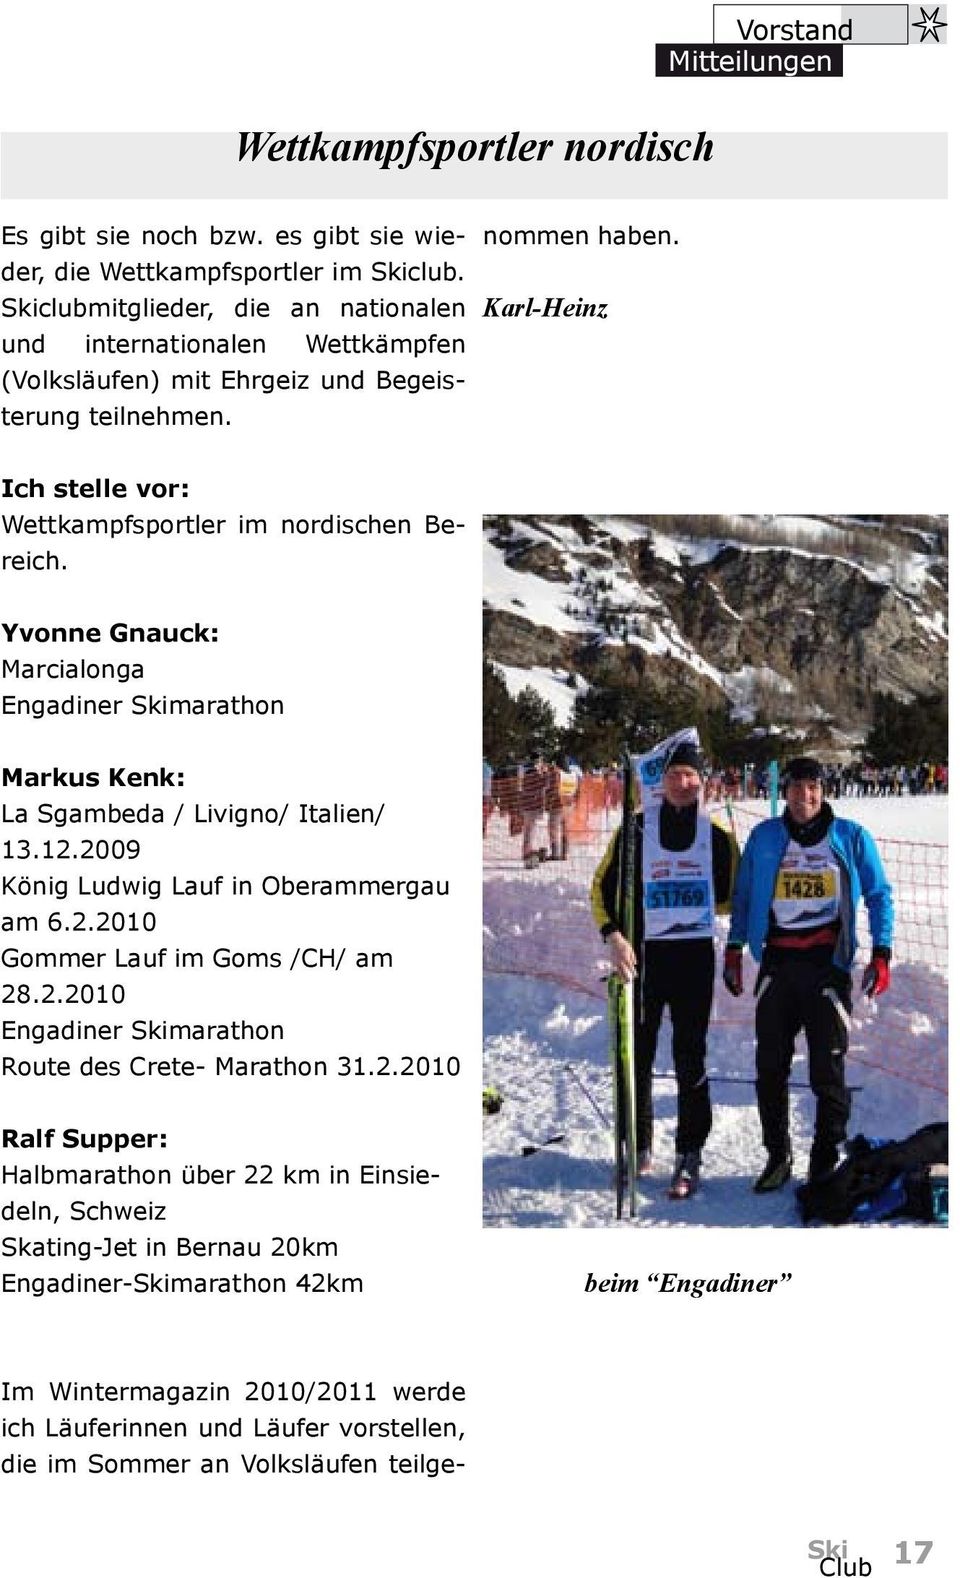 Karl-Heinz Ich stelle vor: Wettkampfsportler im nordischen Bereich. Yvonne Gnauck: Marcialonga Engadiner Skimarathon Markus Kenk: La Sgambeda / Livigno/ Italien/ 13.12.